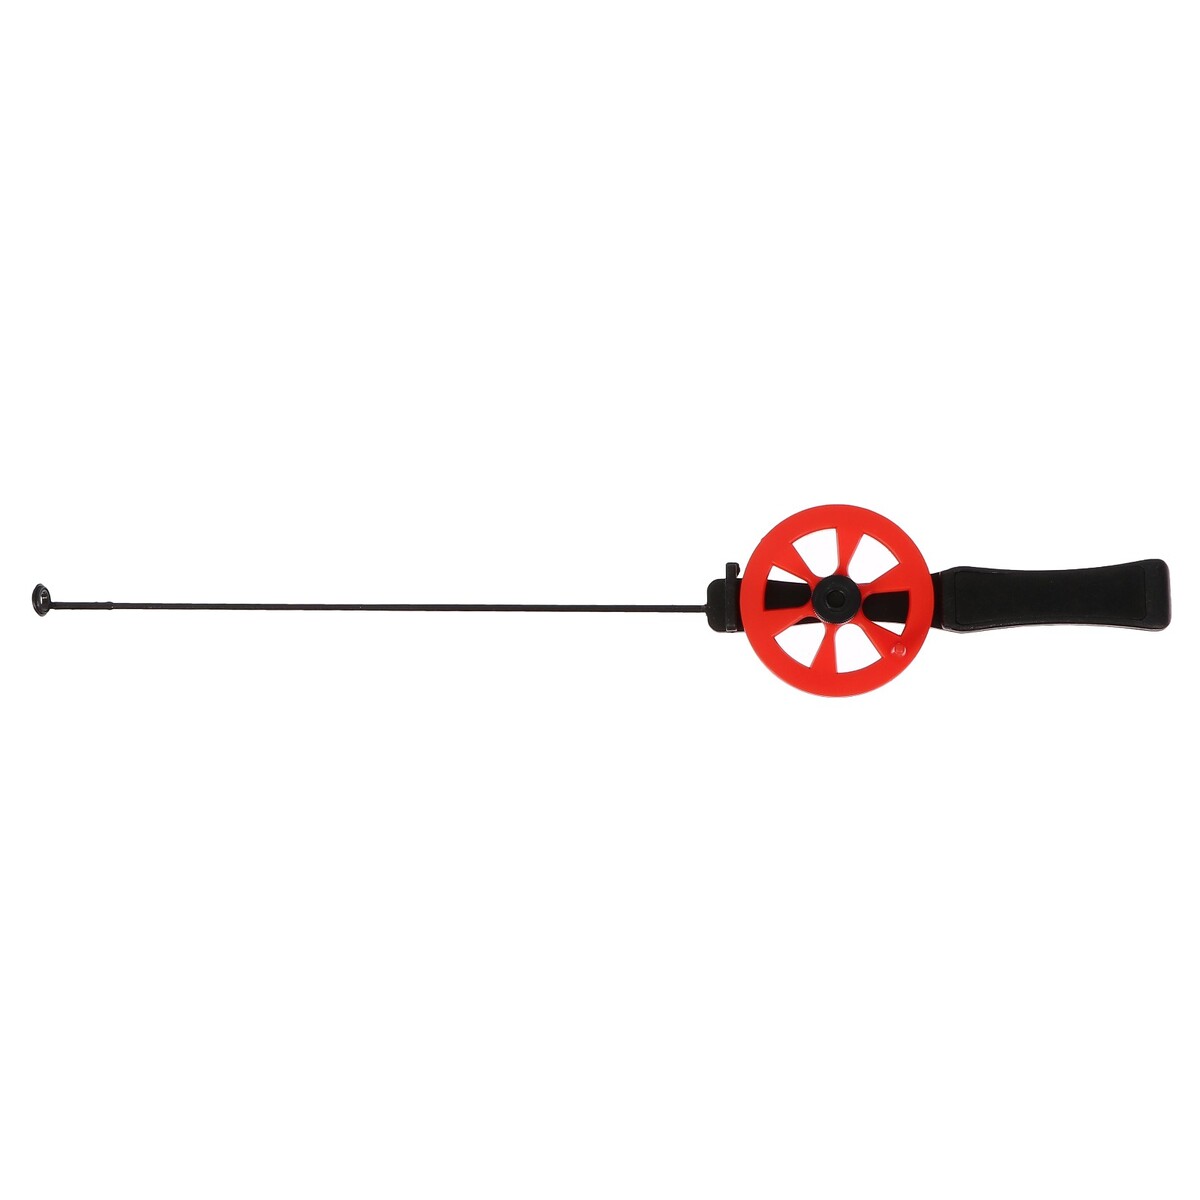 Удочка зимняя, ручка пластик, направляющая лески, красная, hfb-15 катушка инерционная металл пластик диаметр 6 5 см направляющая черно салатовый 701d